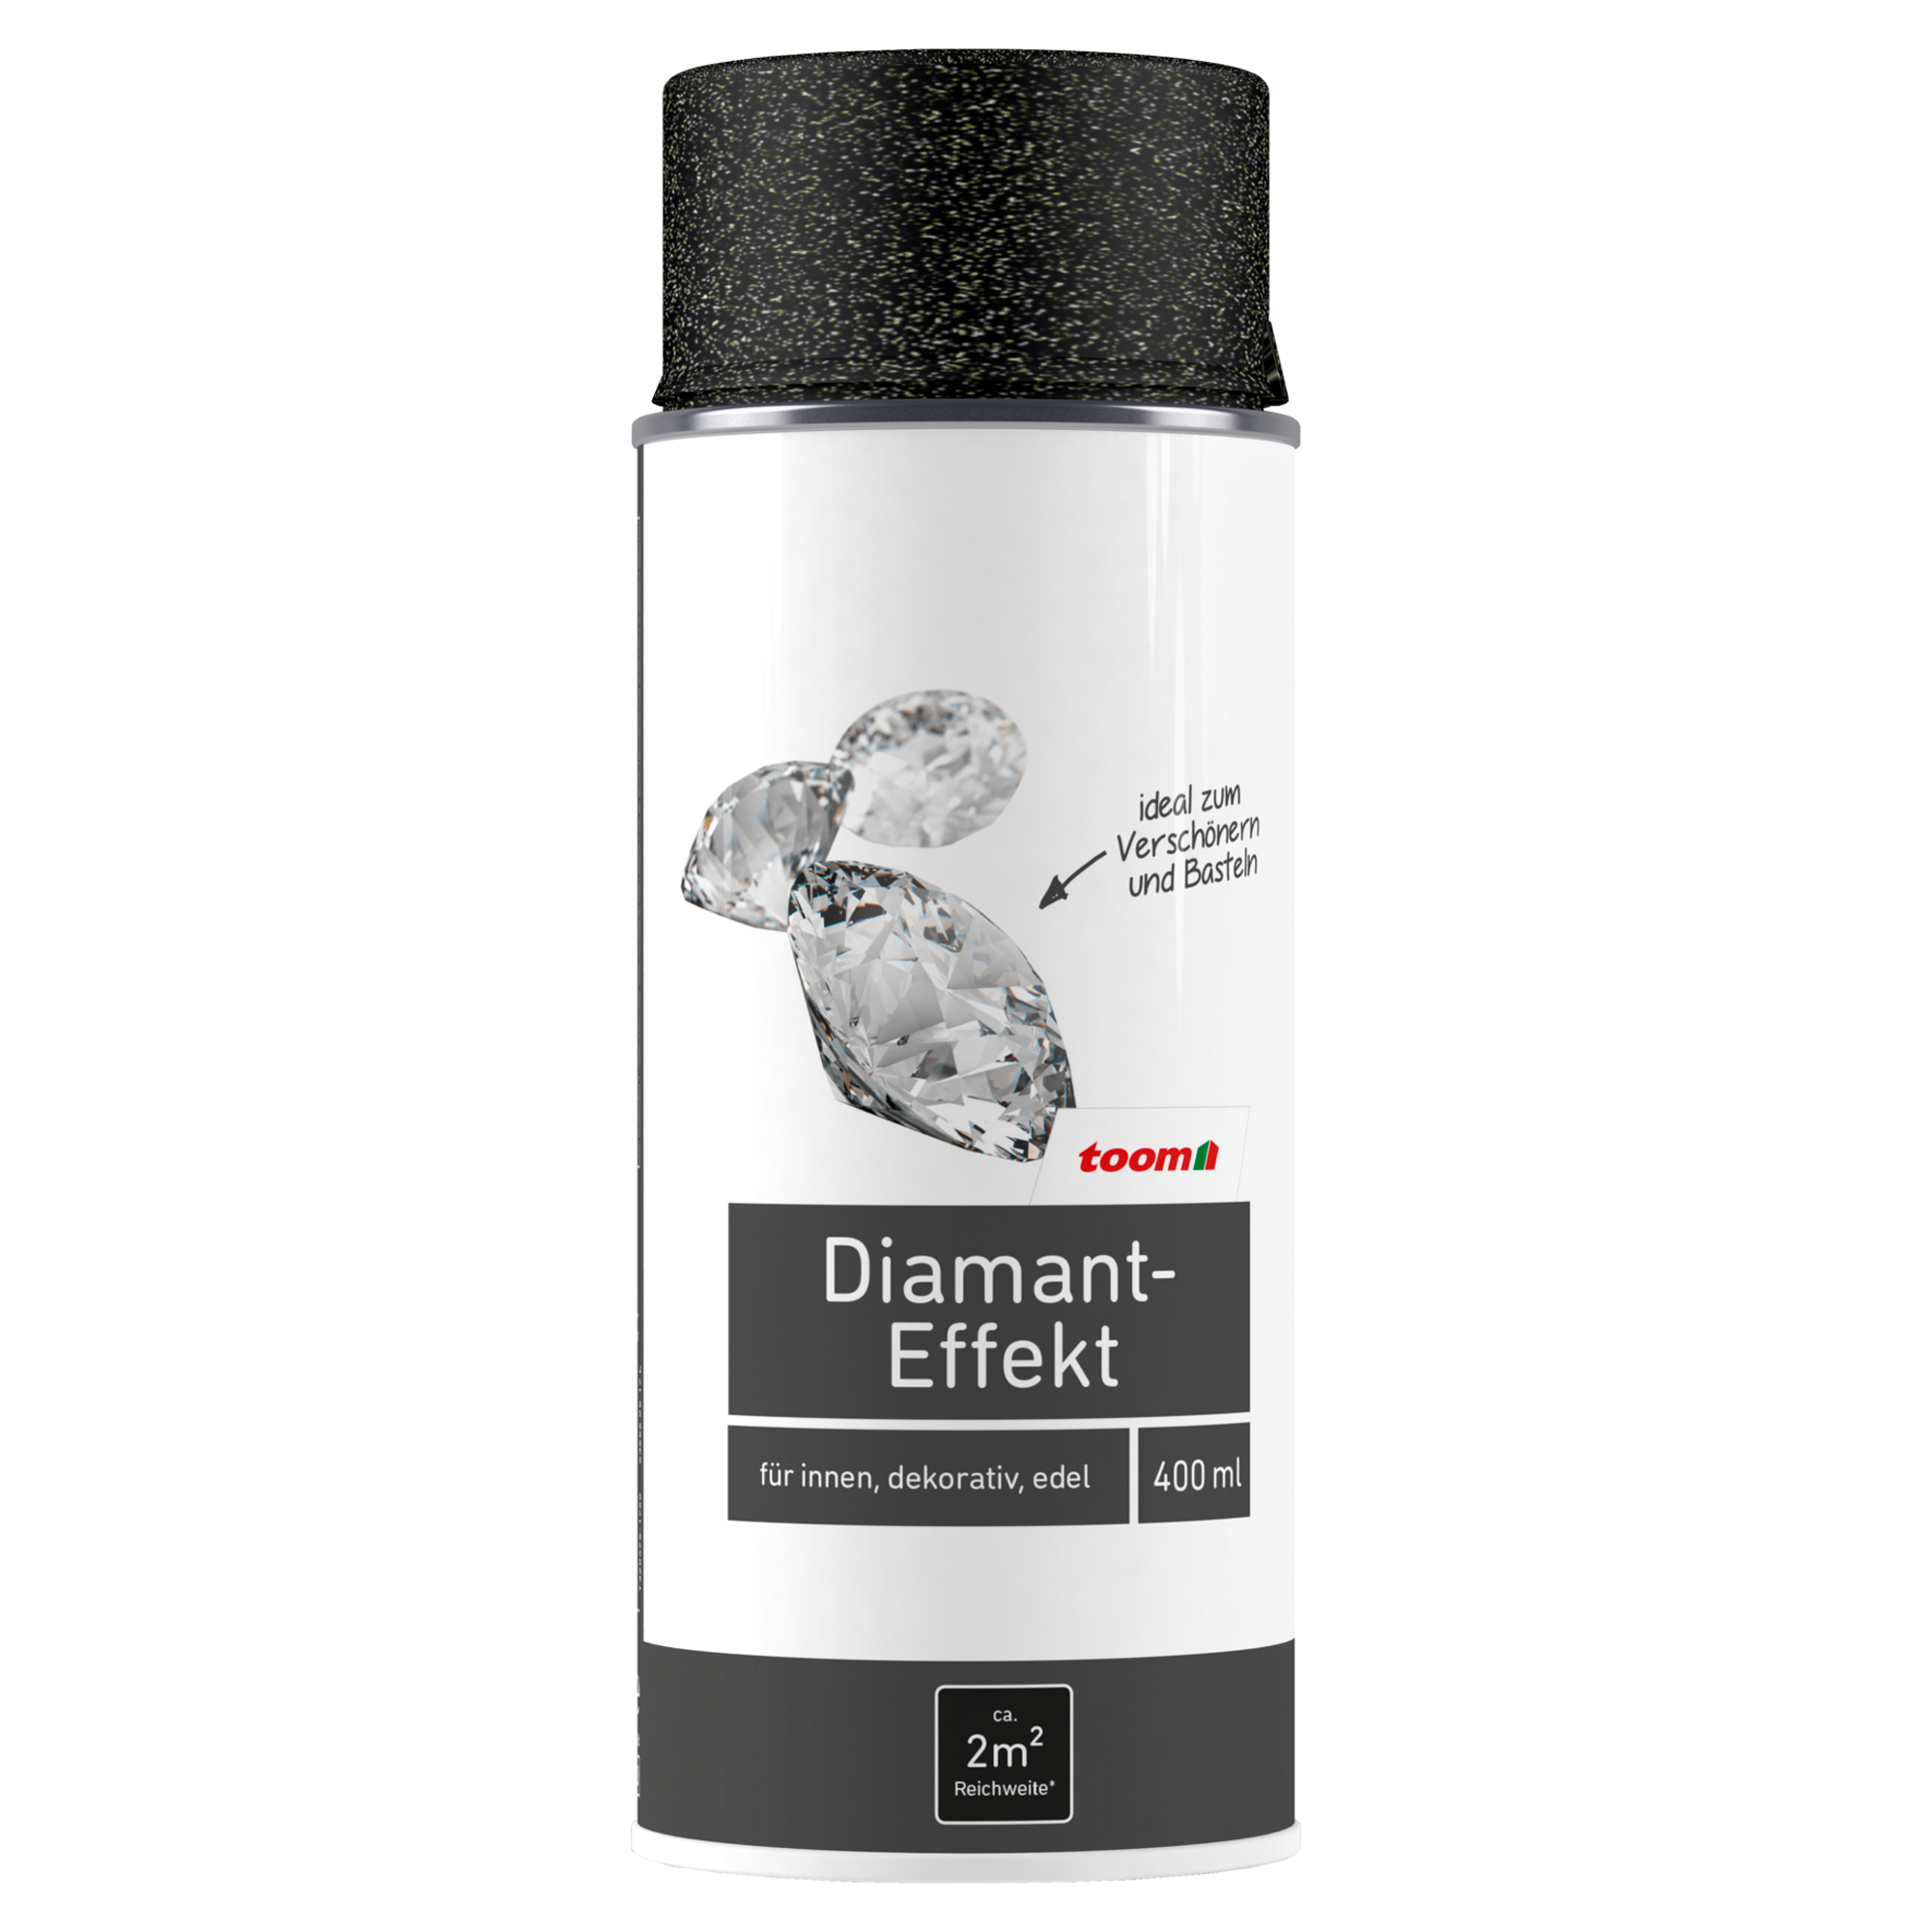 Diamant-Effekt-Sprühlack gold glänzend 400 ml + product picture